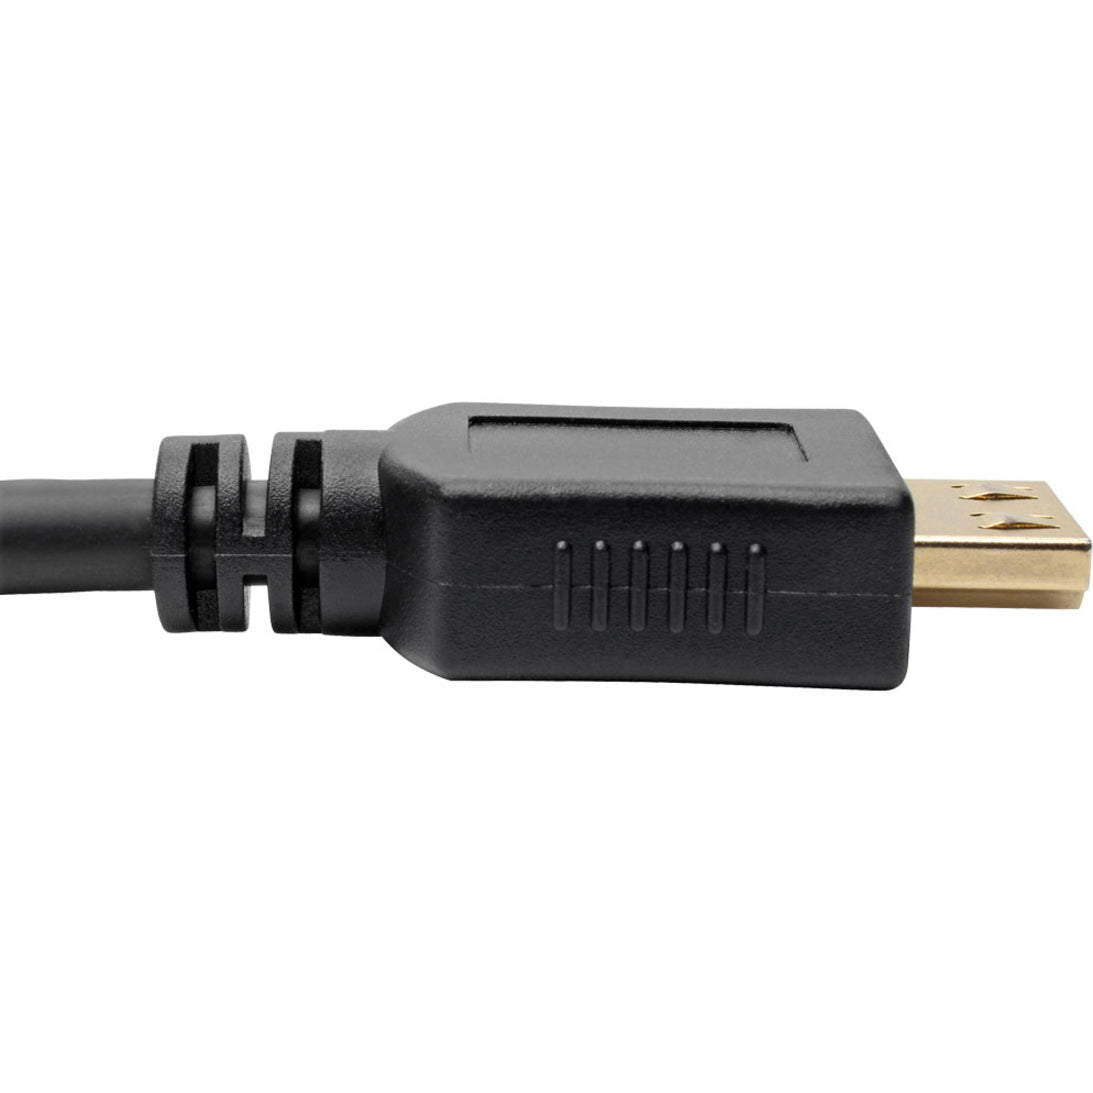 Tripp Lite P568-016-BK-GRP High-Speed HDMI Cable 16 ft. with Gripping Connectors - 4K Black  Tripp Lite P568-016-BK-GRP Cavo HDMI ad alta velocità 16 ft. con connettori aderenti - 4K nero